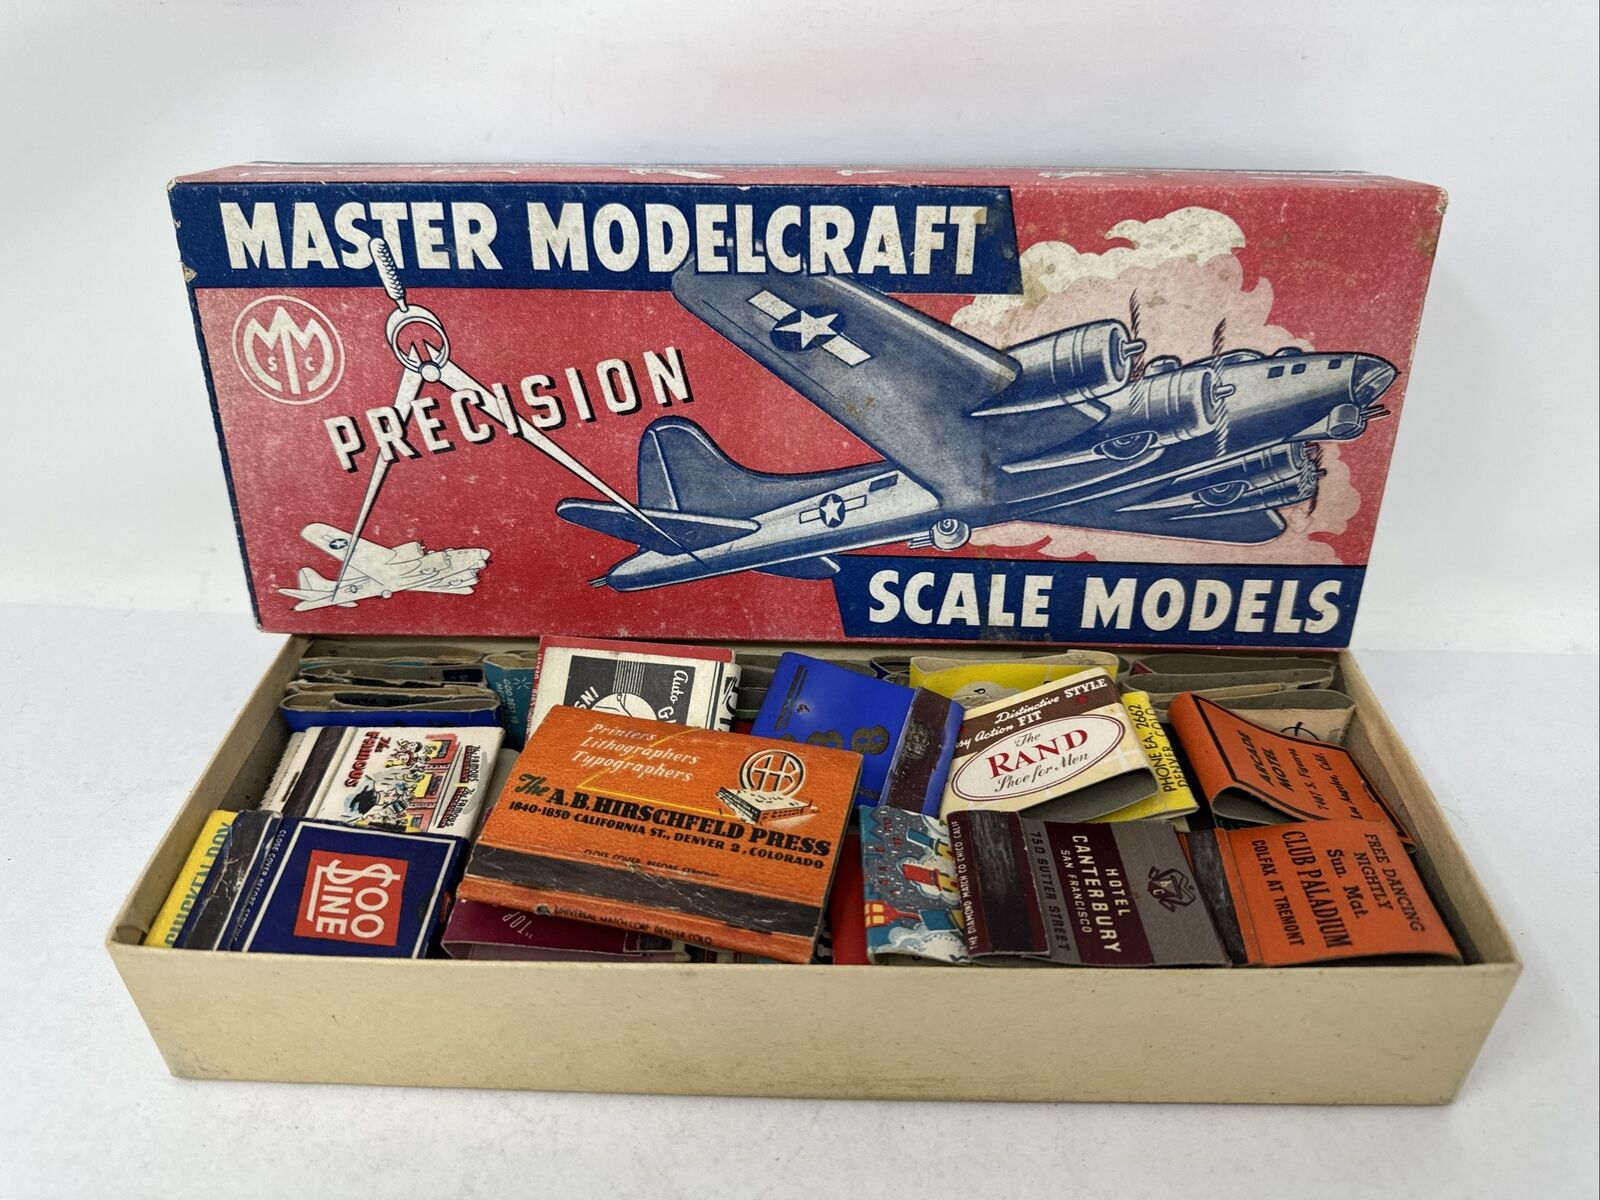 Vintage Matchbook Lot Empty Estate Sale Find in Old Airplane model box Denver